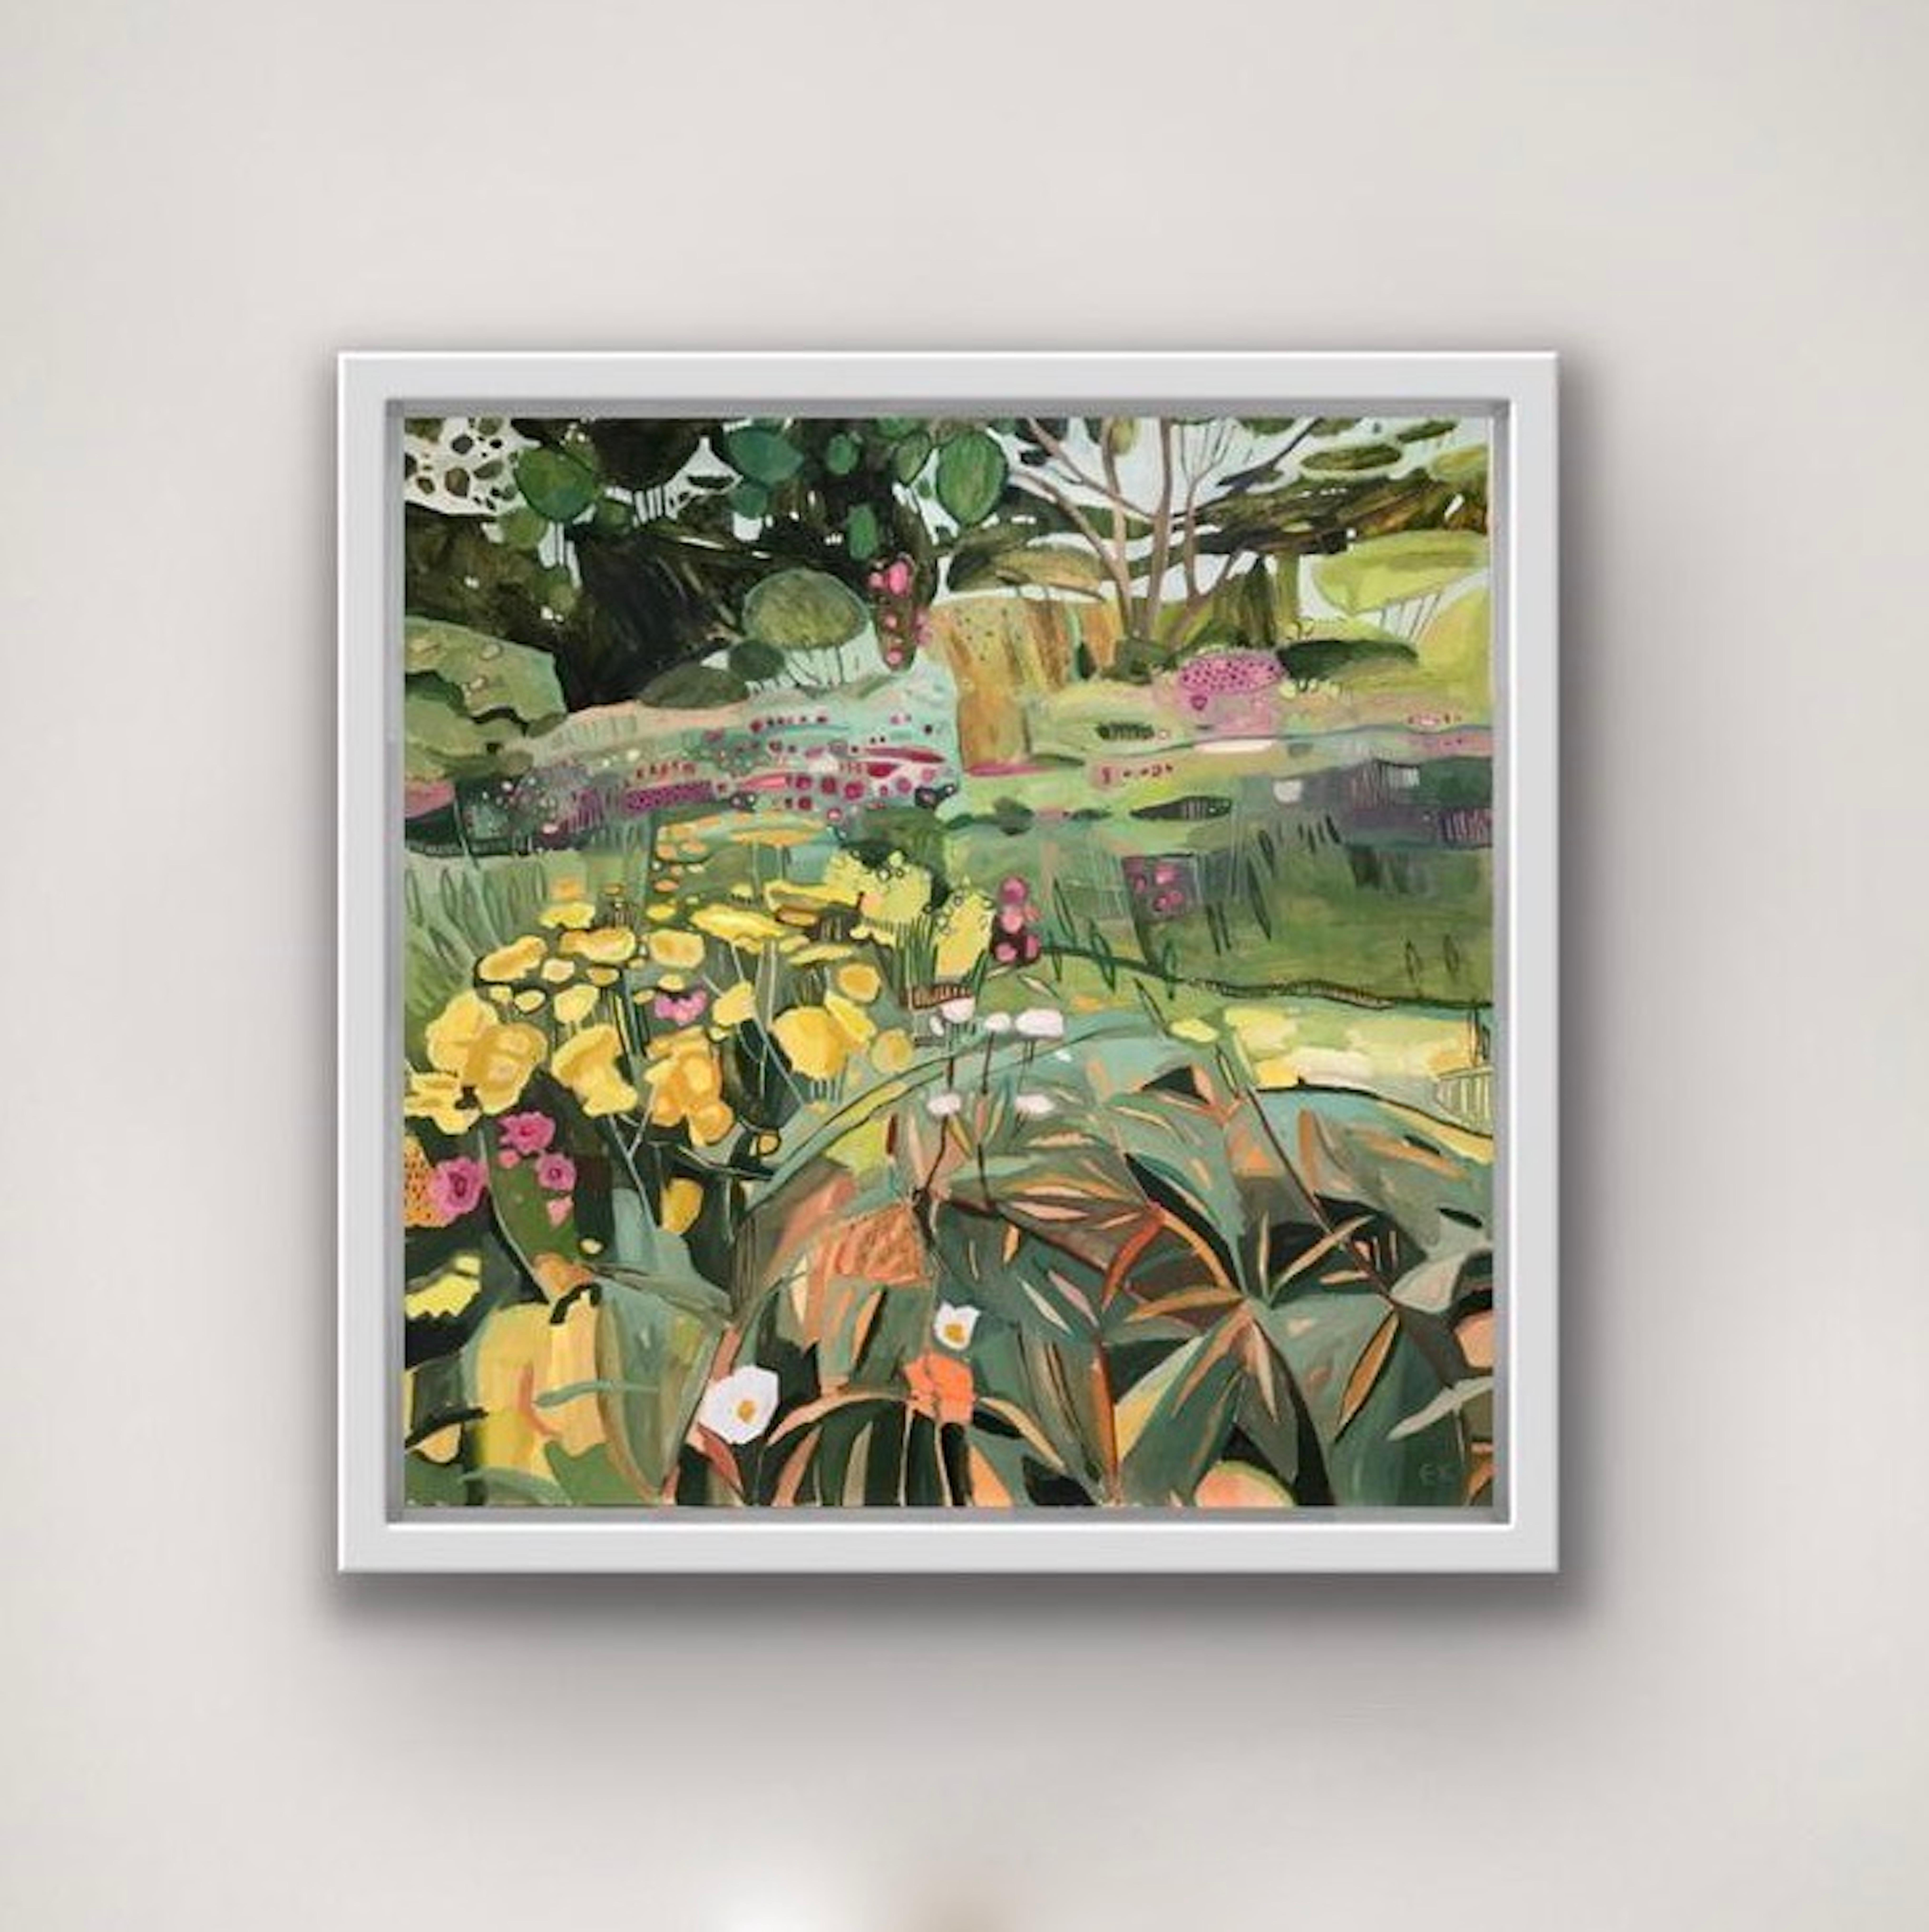 Cottage Garden at Coleshill, landscape, floral, meadows - Painting by Elaine Kazimierczuk